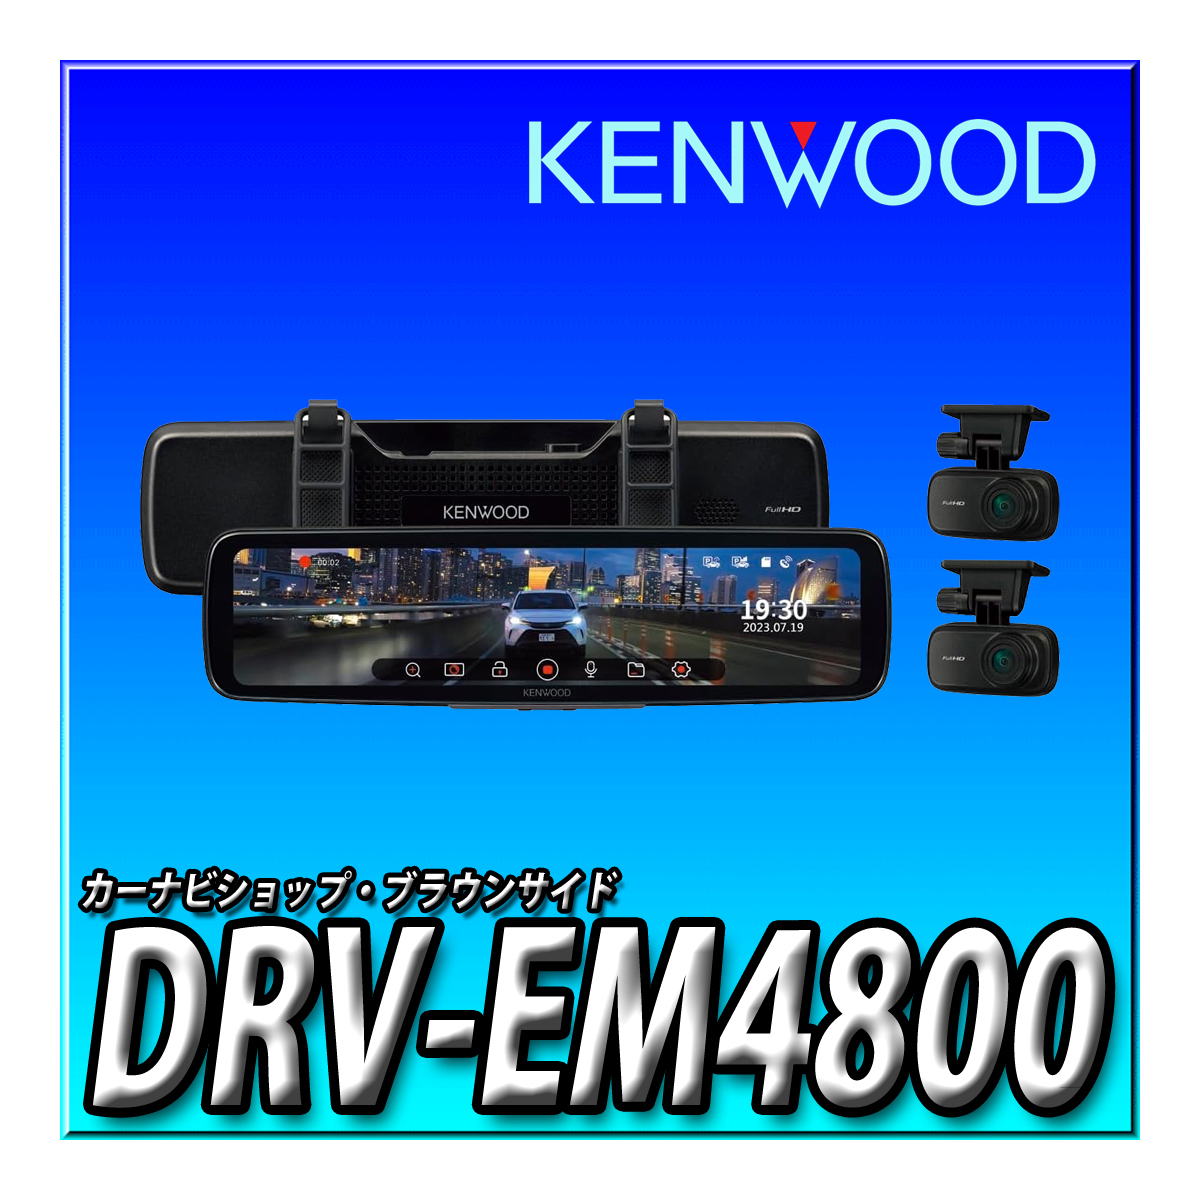 DRV-EM4800 新品未開封品 ケンウッド ドライブレコーダー ミラー型 デジタルミラー搭載 IPS液晶 フルハイビジョン バンド式 ミラレコ_画像1